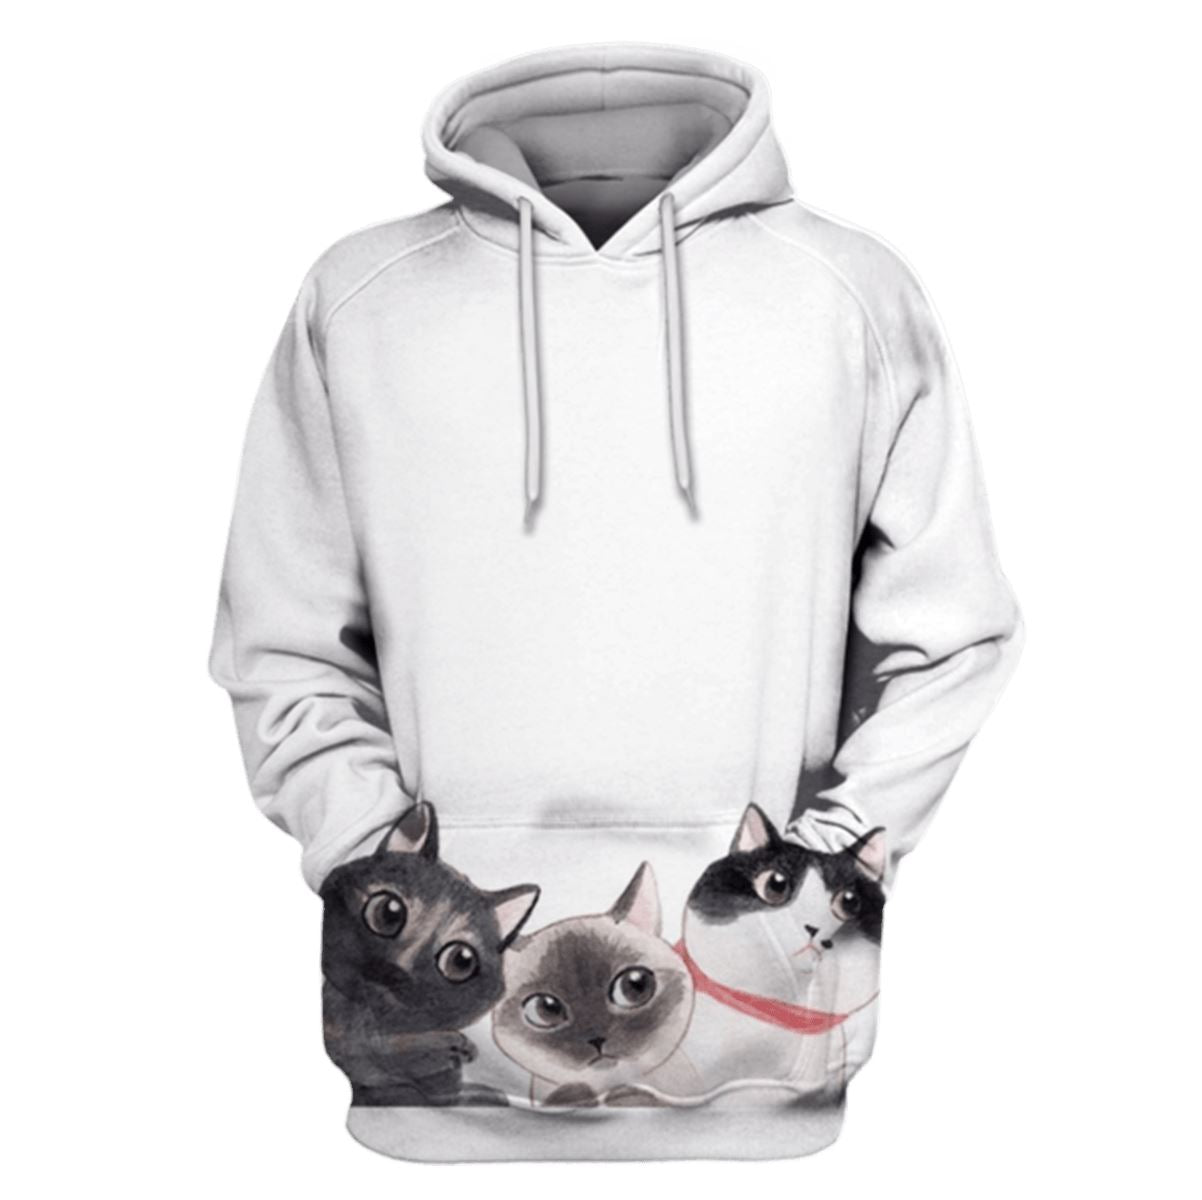 Cat Hoodies - T-Shirt Apparel HL101115 3D Custom Fleece Hoodies Hoodie S 